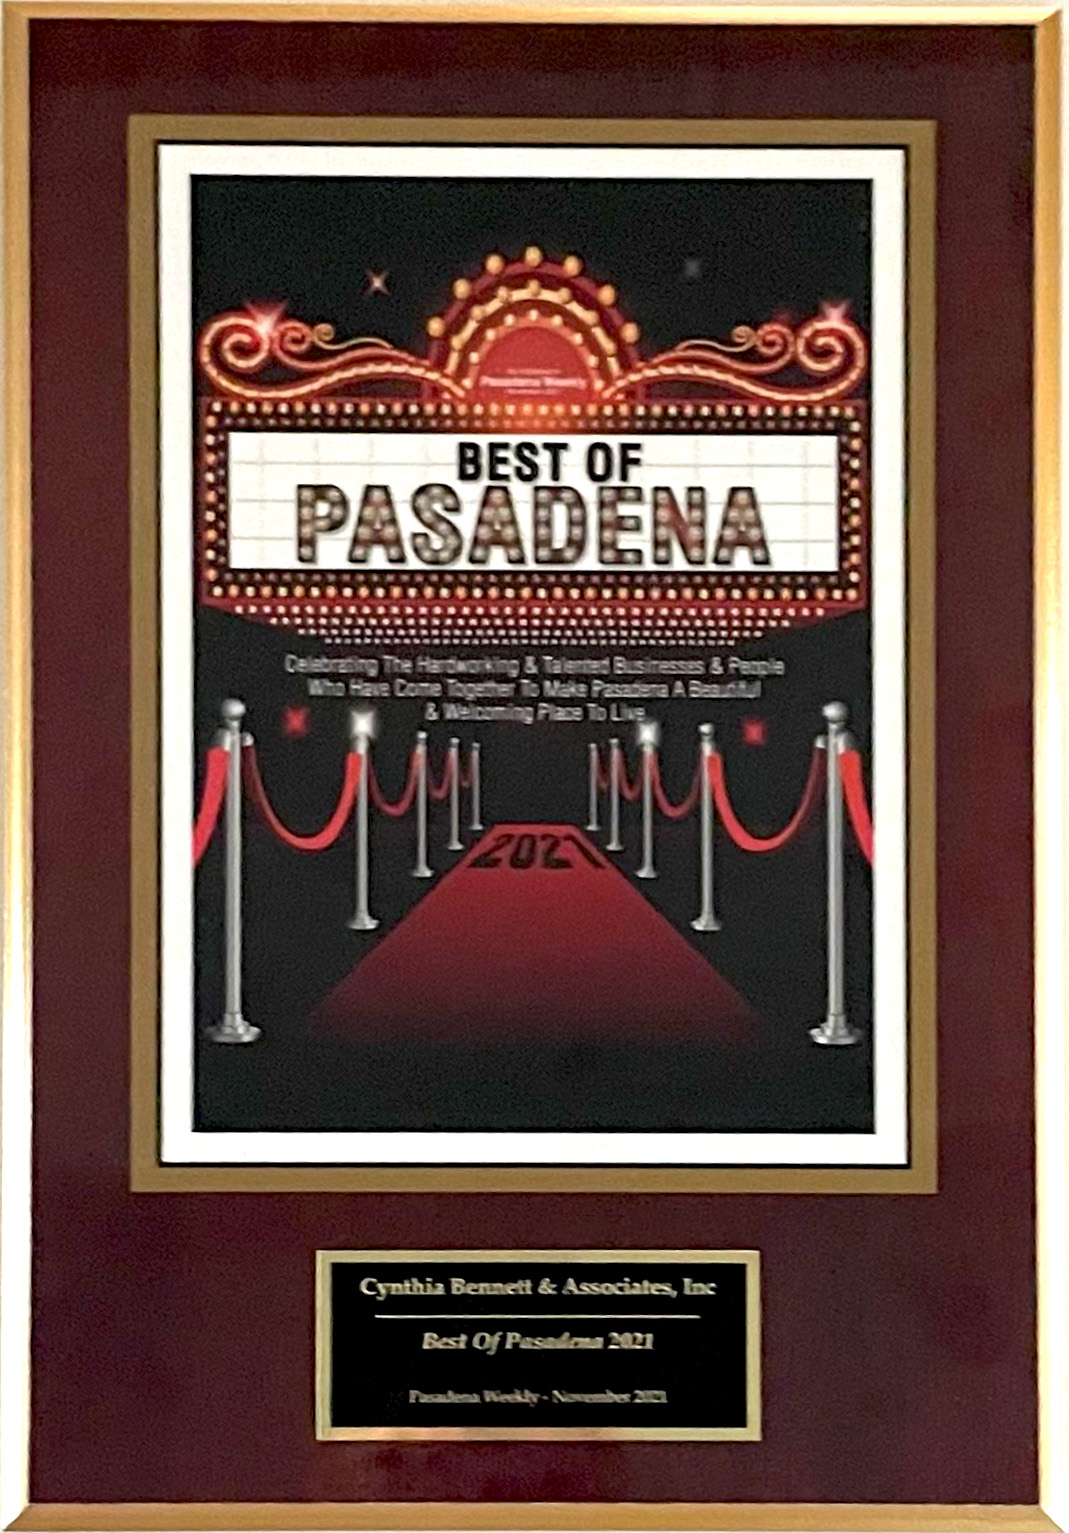 Cynthia Bennett & Associates Best of Pasadena 2021 Award